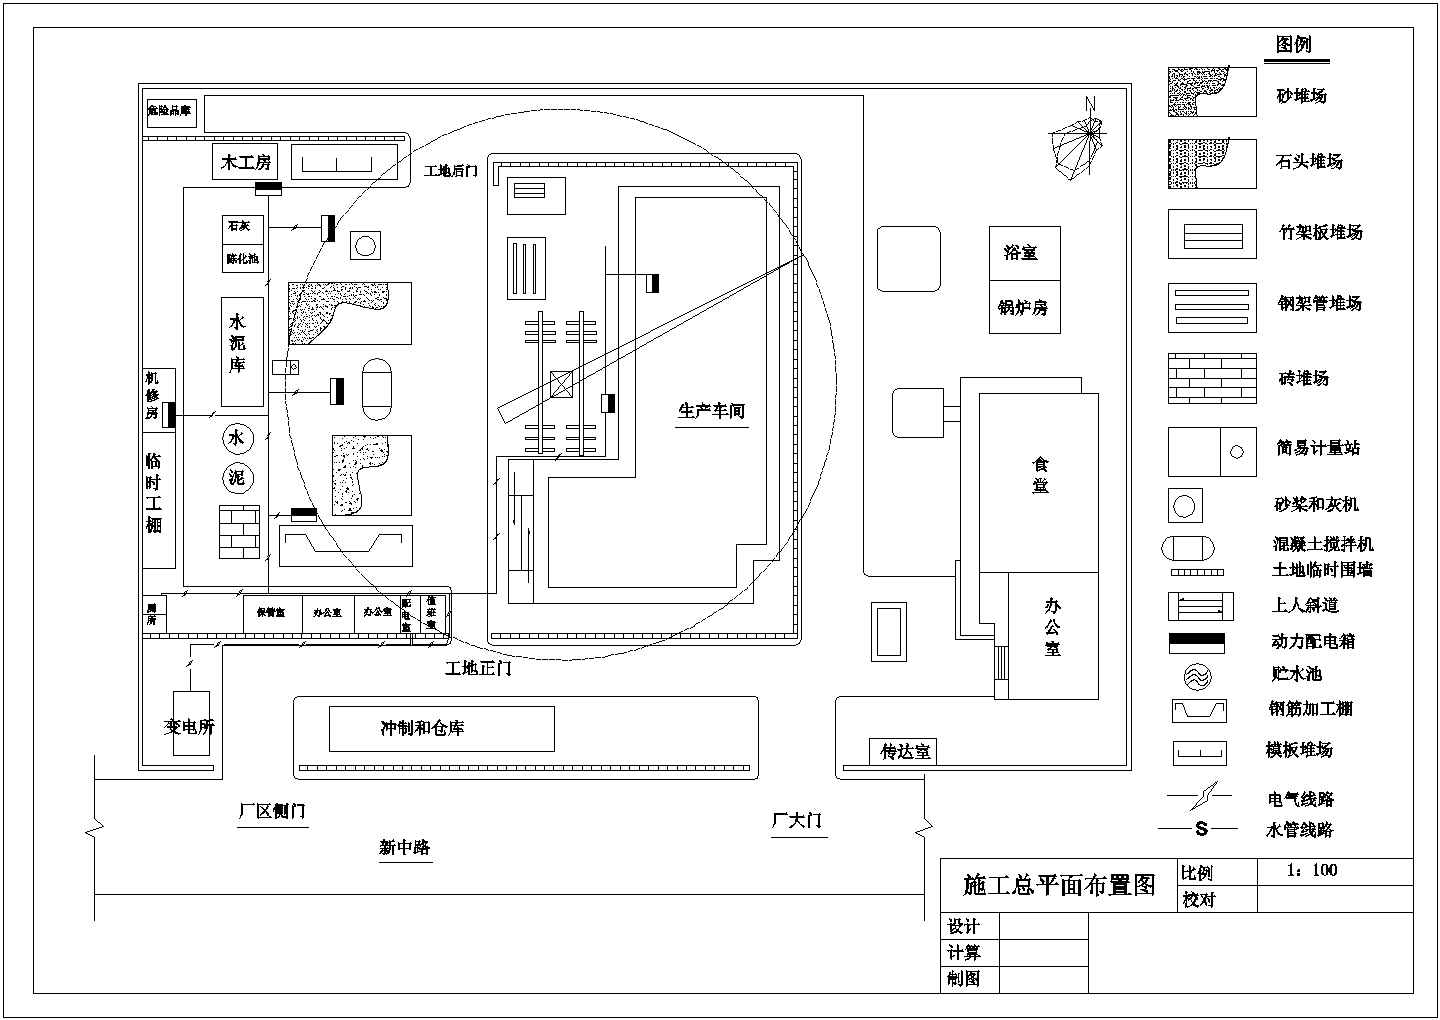 天津某电力设备公司生产车间施工方案